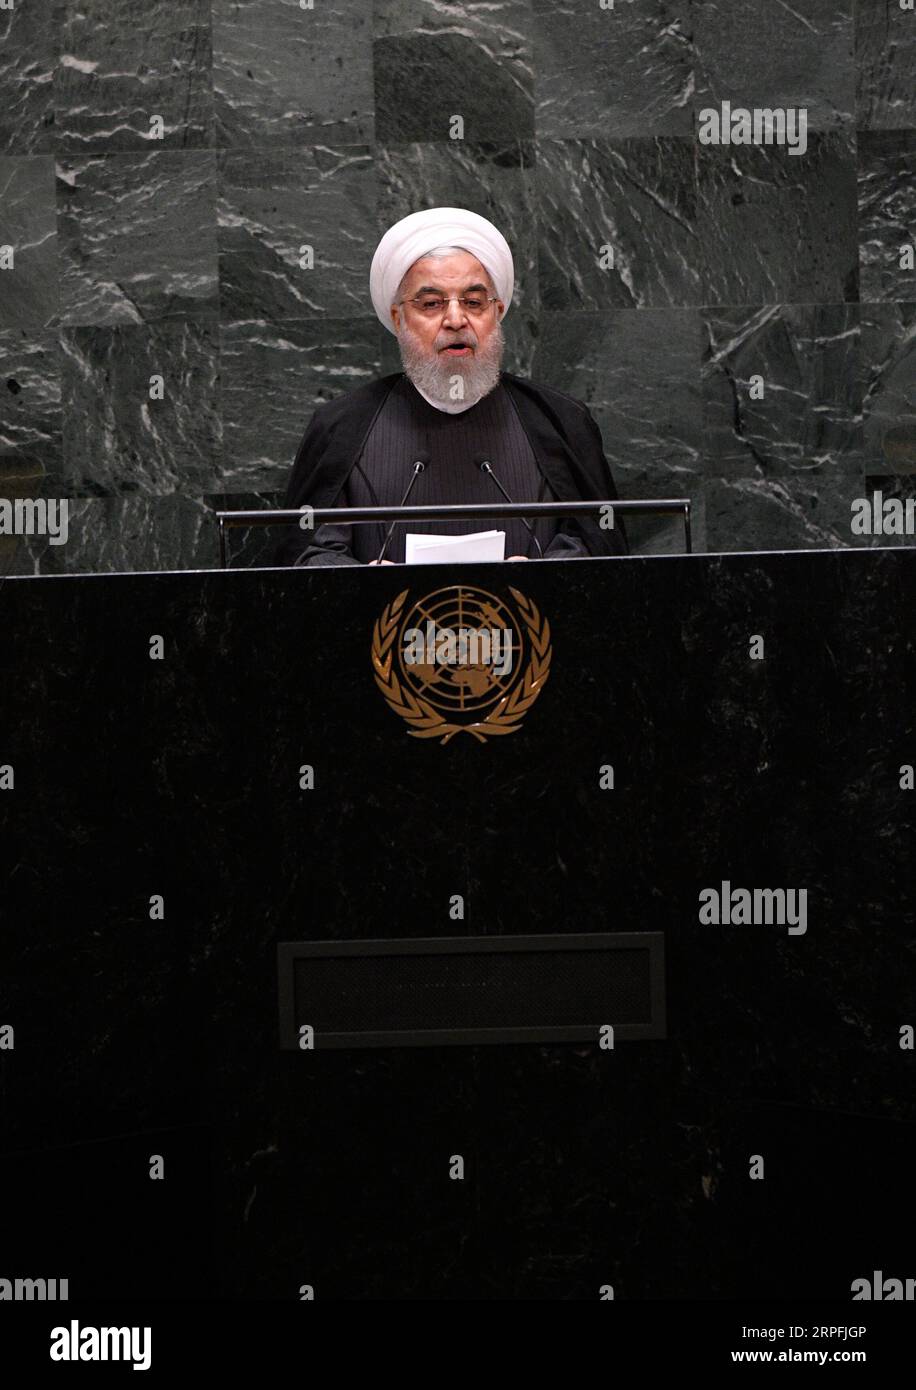 190925 -- NATIONS UNIES, 25 septembre 2019 -- le président iranien Hassan Rouhani s'adresse au débat général de la 74e session de l'Assemblée générale des Nations Unies au siège des Nations Unies à New York, le 25 septembre 2019. Rouhani mercredi a exclu les négociations avec les États-Unis à moins que ces derniers ne lèvent d’abord les sanctions contre son pays. ONU-ASSEMBLÉE GÉNÉRALE-DÉBAT GÉNÉRAL-IRAN LIUXJIE PUBLICATIONXNOTXINXCHN Banque D'Images